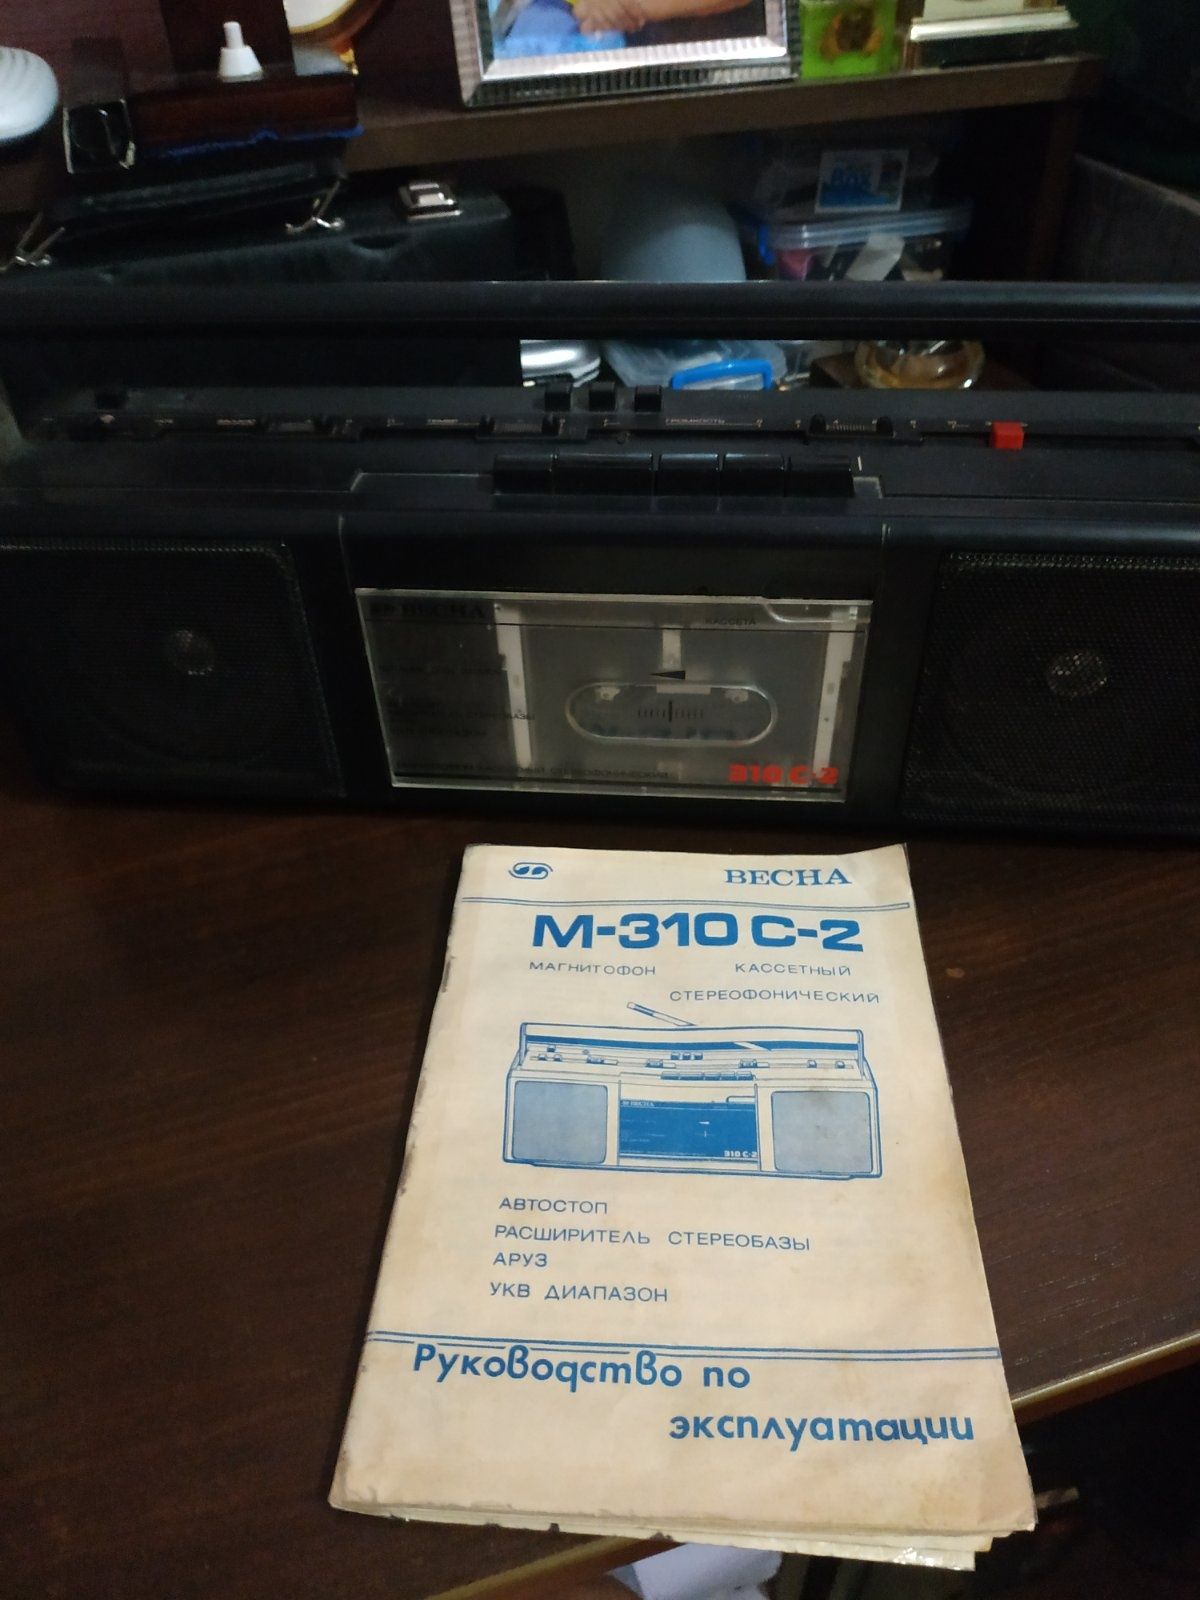 Кассетный стереофонический магнитофон Весна М-310 С-2